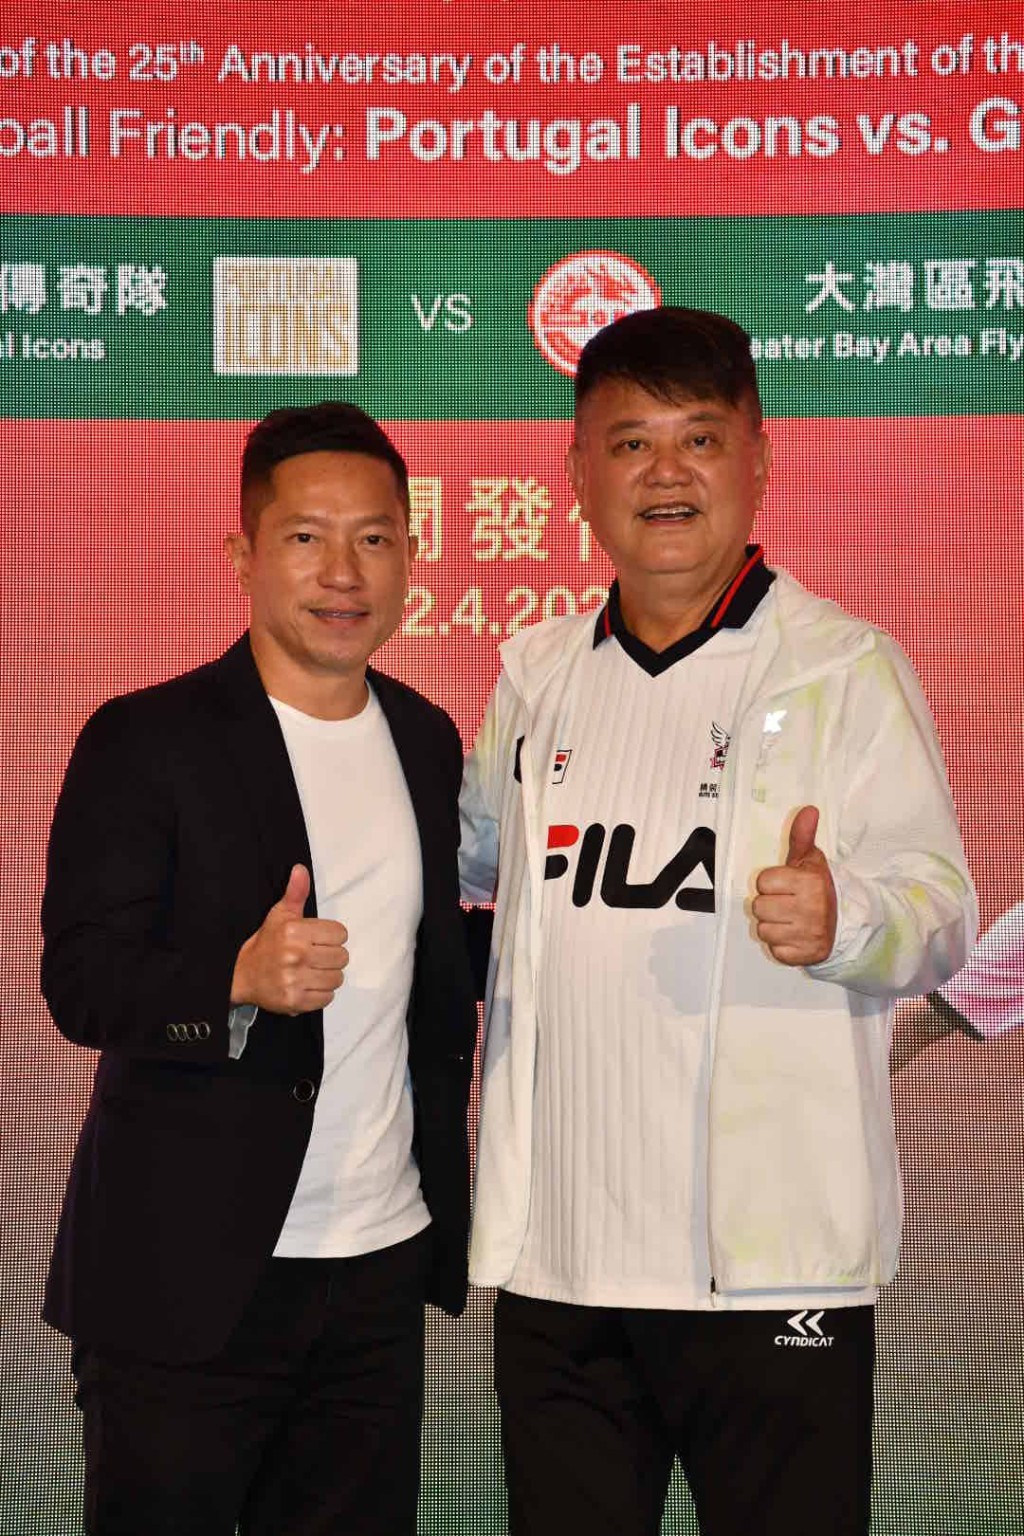 陳百祥與陳志康出席慶祝澳門特別行政區成立25周年「葡萄牙傳奇隊對大灣區飛龍」五人足球友誼賽記者會